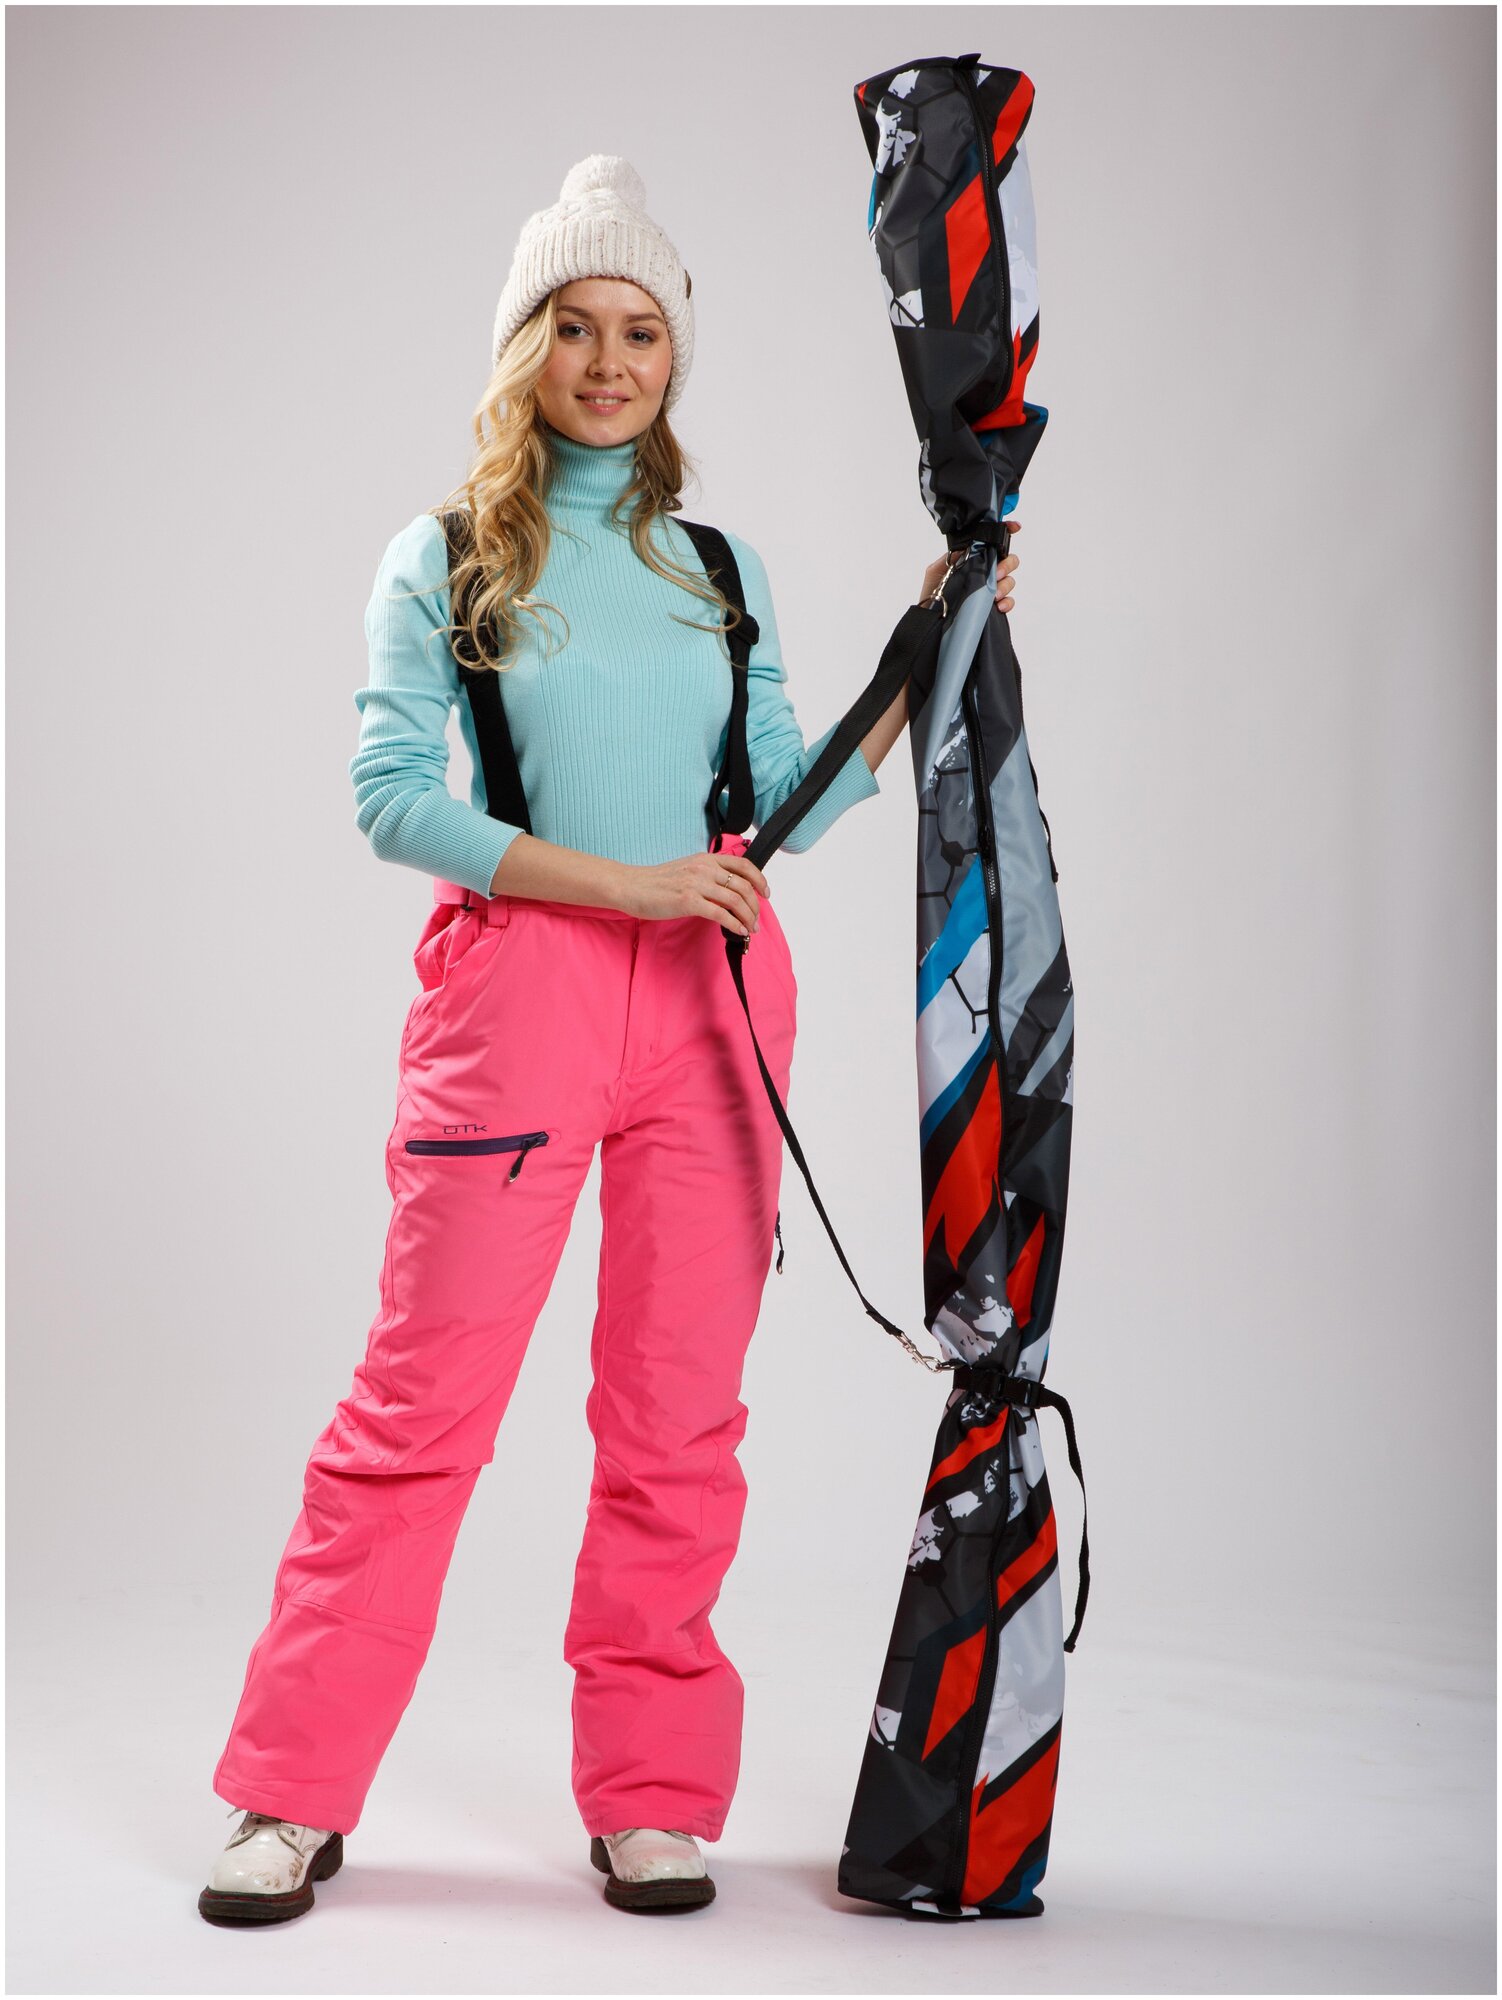 Чехол для беговых лыж Case For Scooter на 1-2 пары, лыжный чехол, лыжная сумка, серый, 175 см